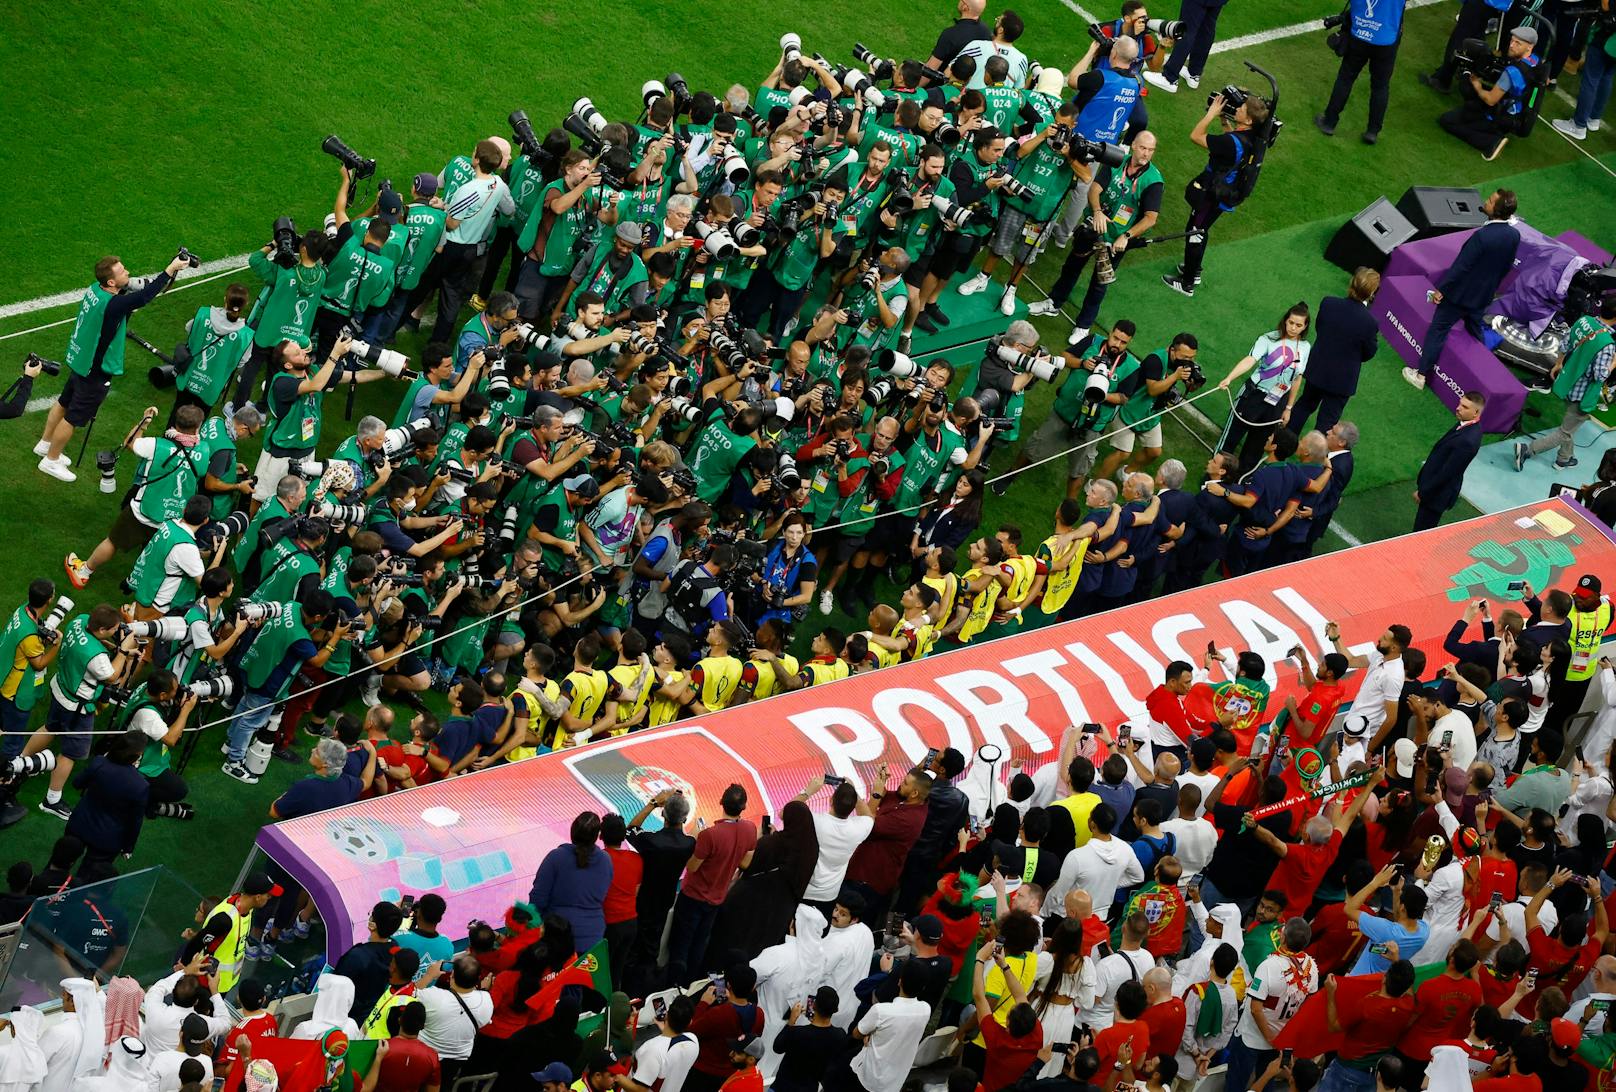 Die Fotografen der internationalen Presse interessieren sich bei der Portugal-Hymne nur für "Bankerldrücker" Ronaldo.